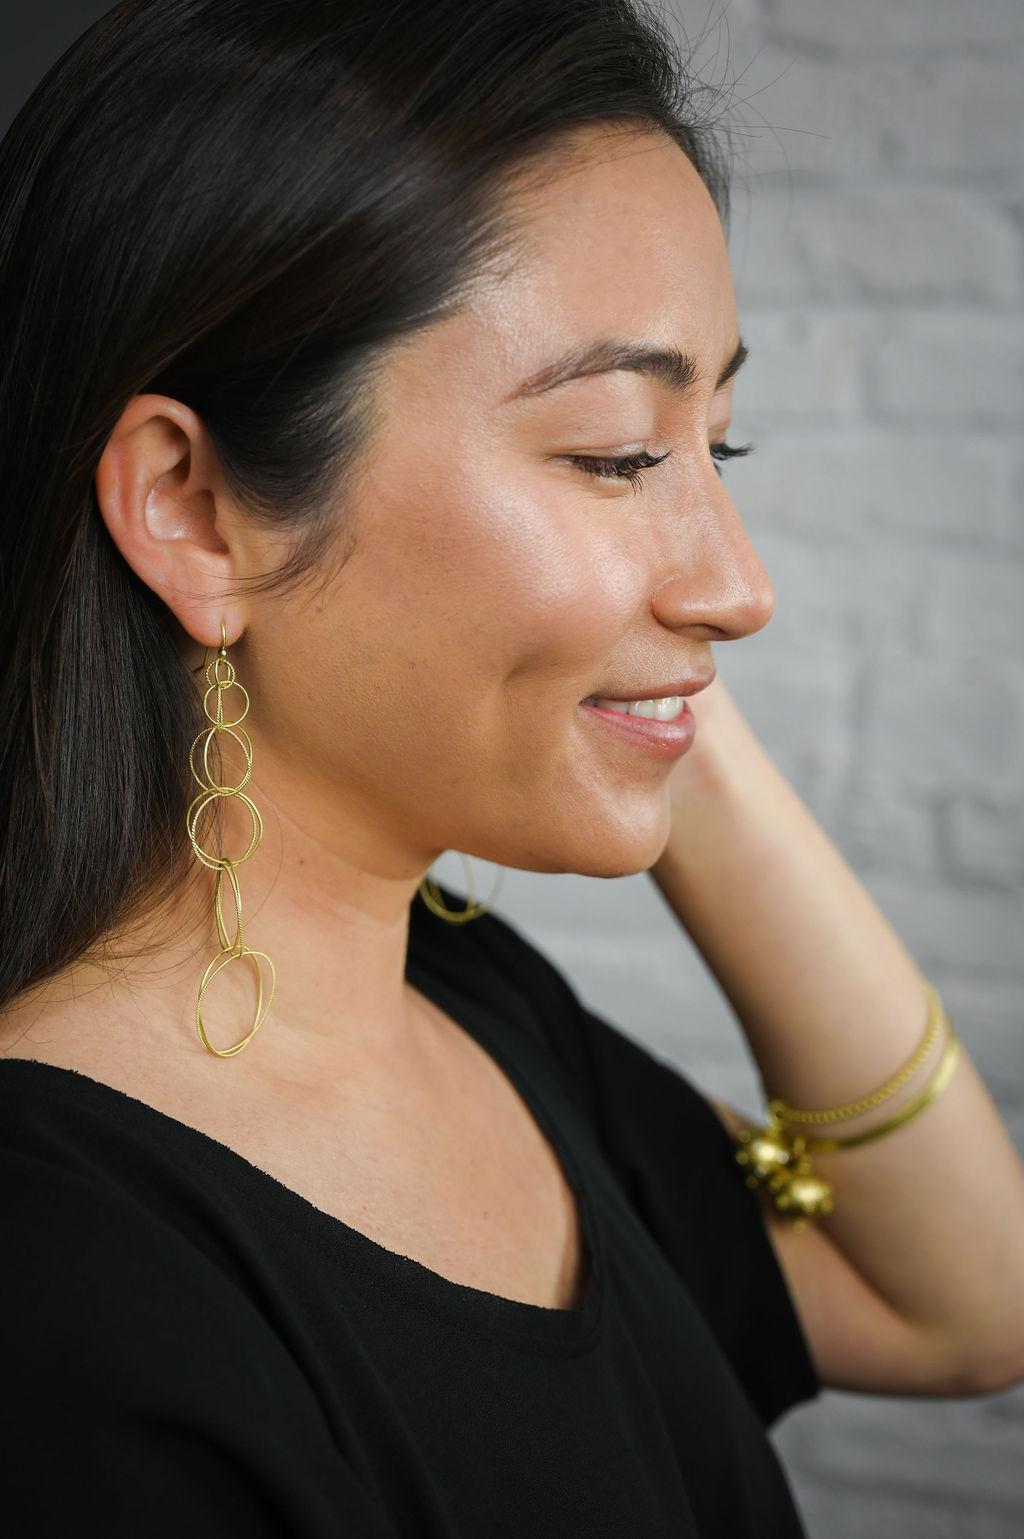 Diese leichten, extralangen Faye Kim Ohrringe mit doppelter Schlaufe und Ohrhaken, handgefertigt aus 18 Karat Gold, passen zu jedem Outfit und sind perfekt für jede Gelegenheit. 

Abgestuft 7,5 x 27 mm

Länge 4